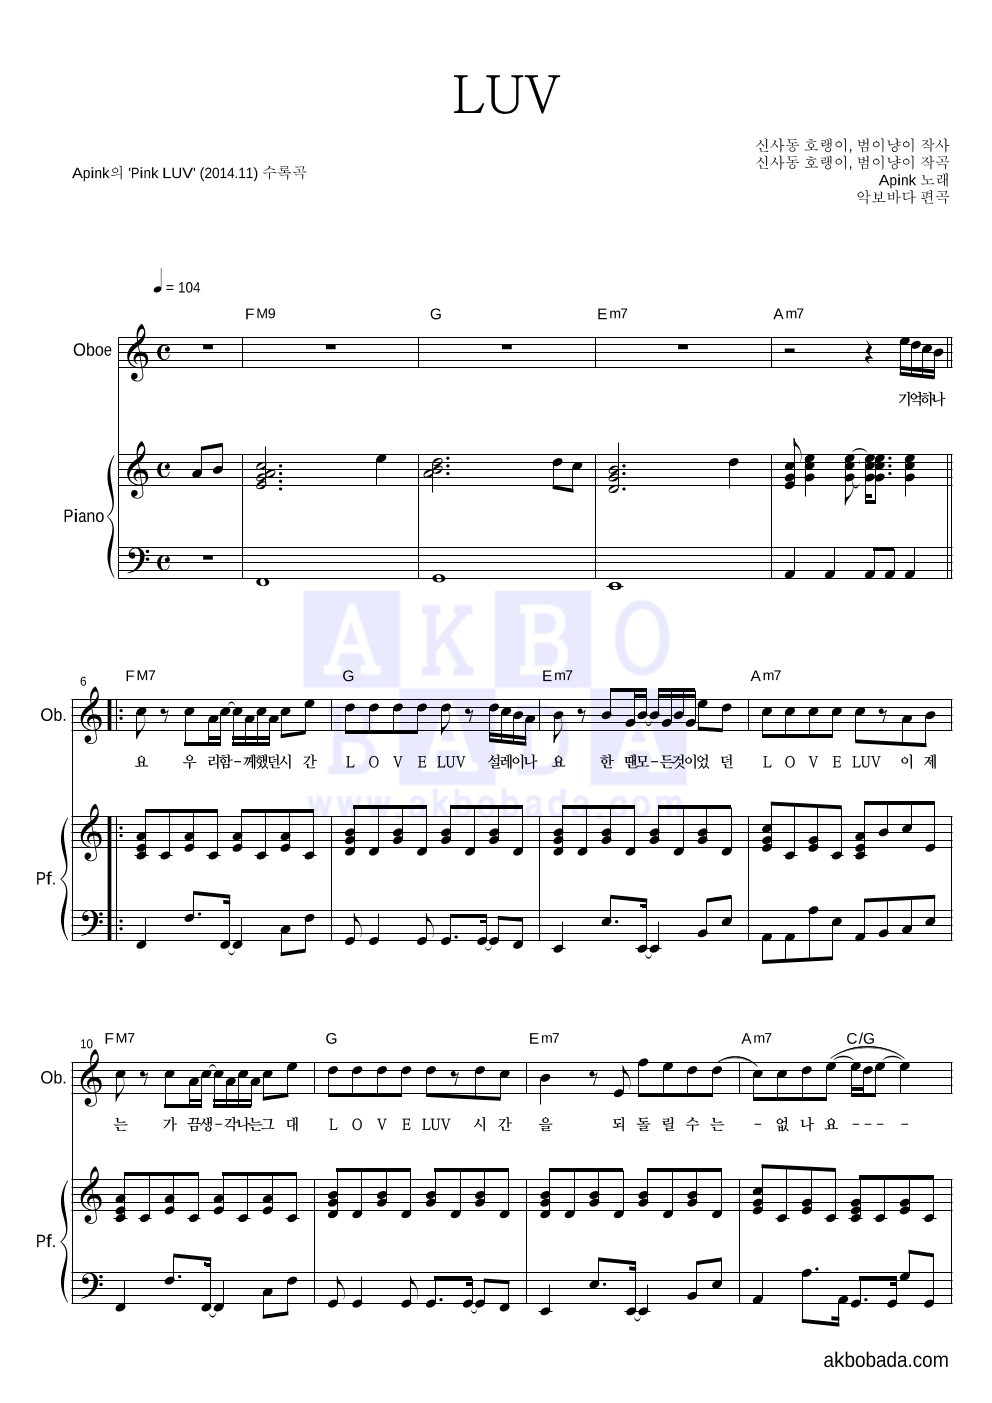 에이핑크 - LUV 오보에&피아노 악보 